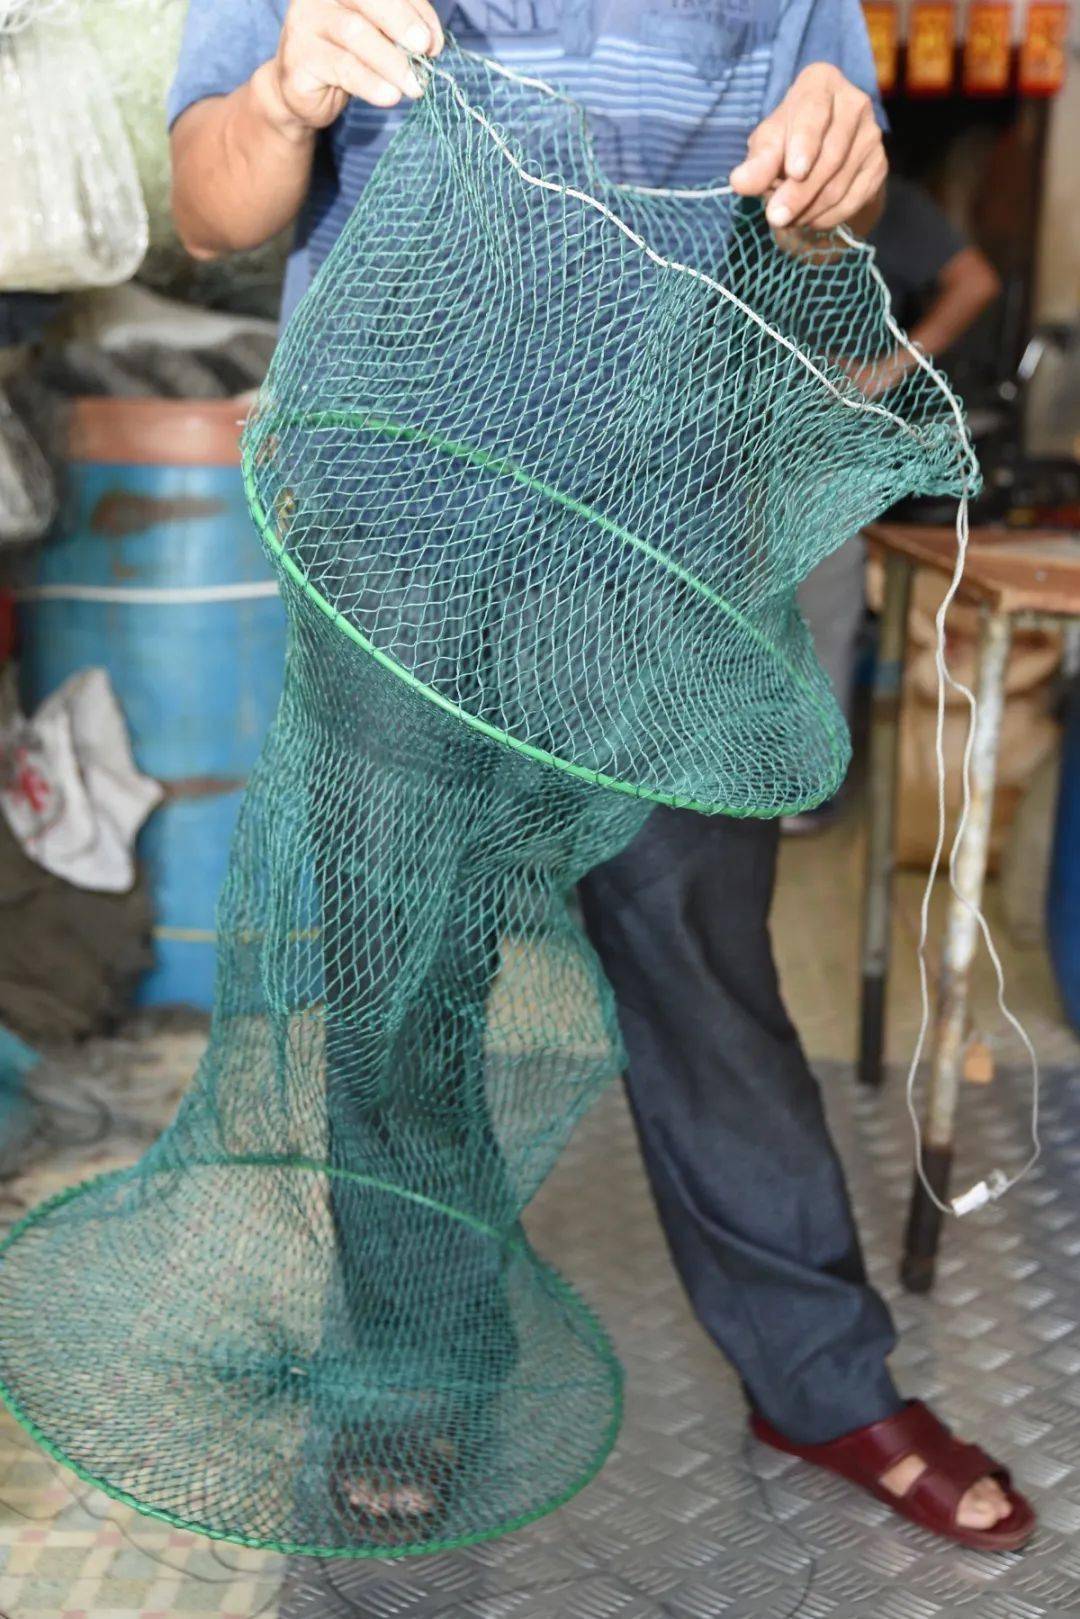 不同材质,不同用途的手工编织渔网